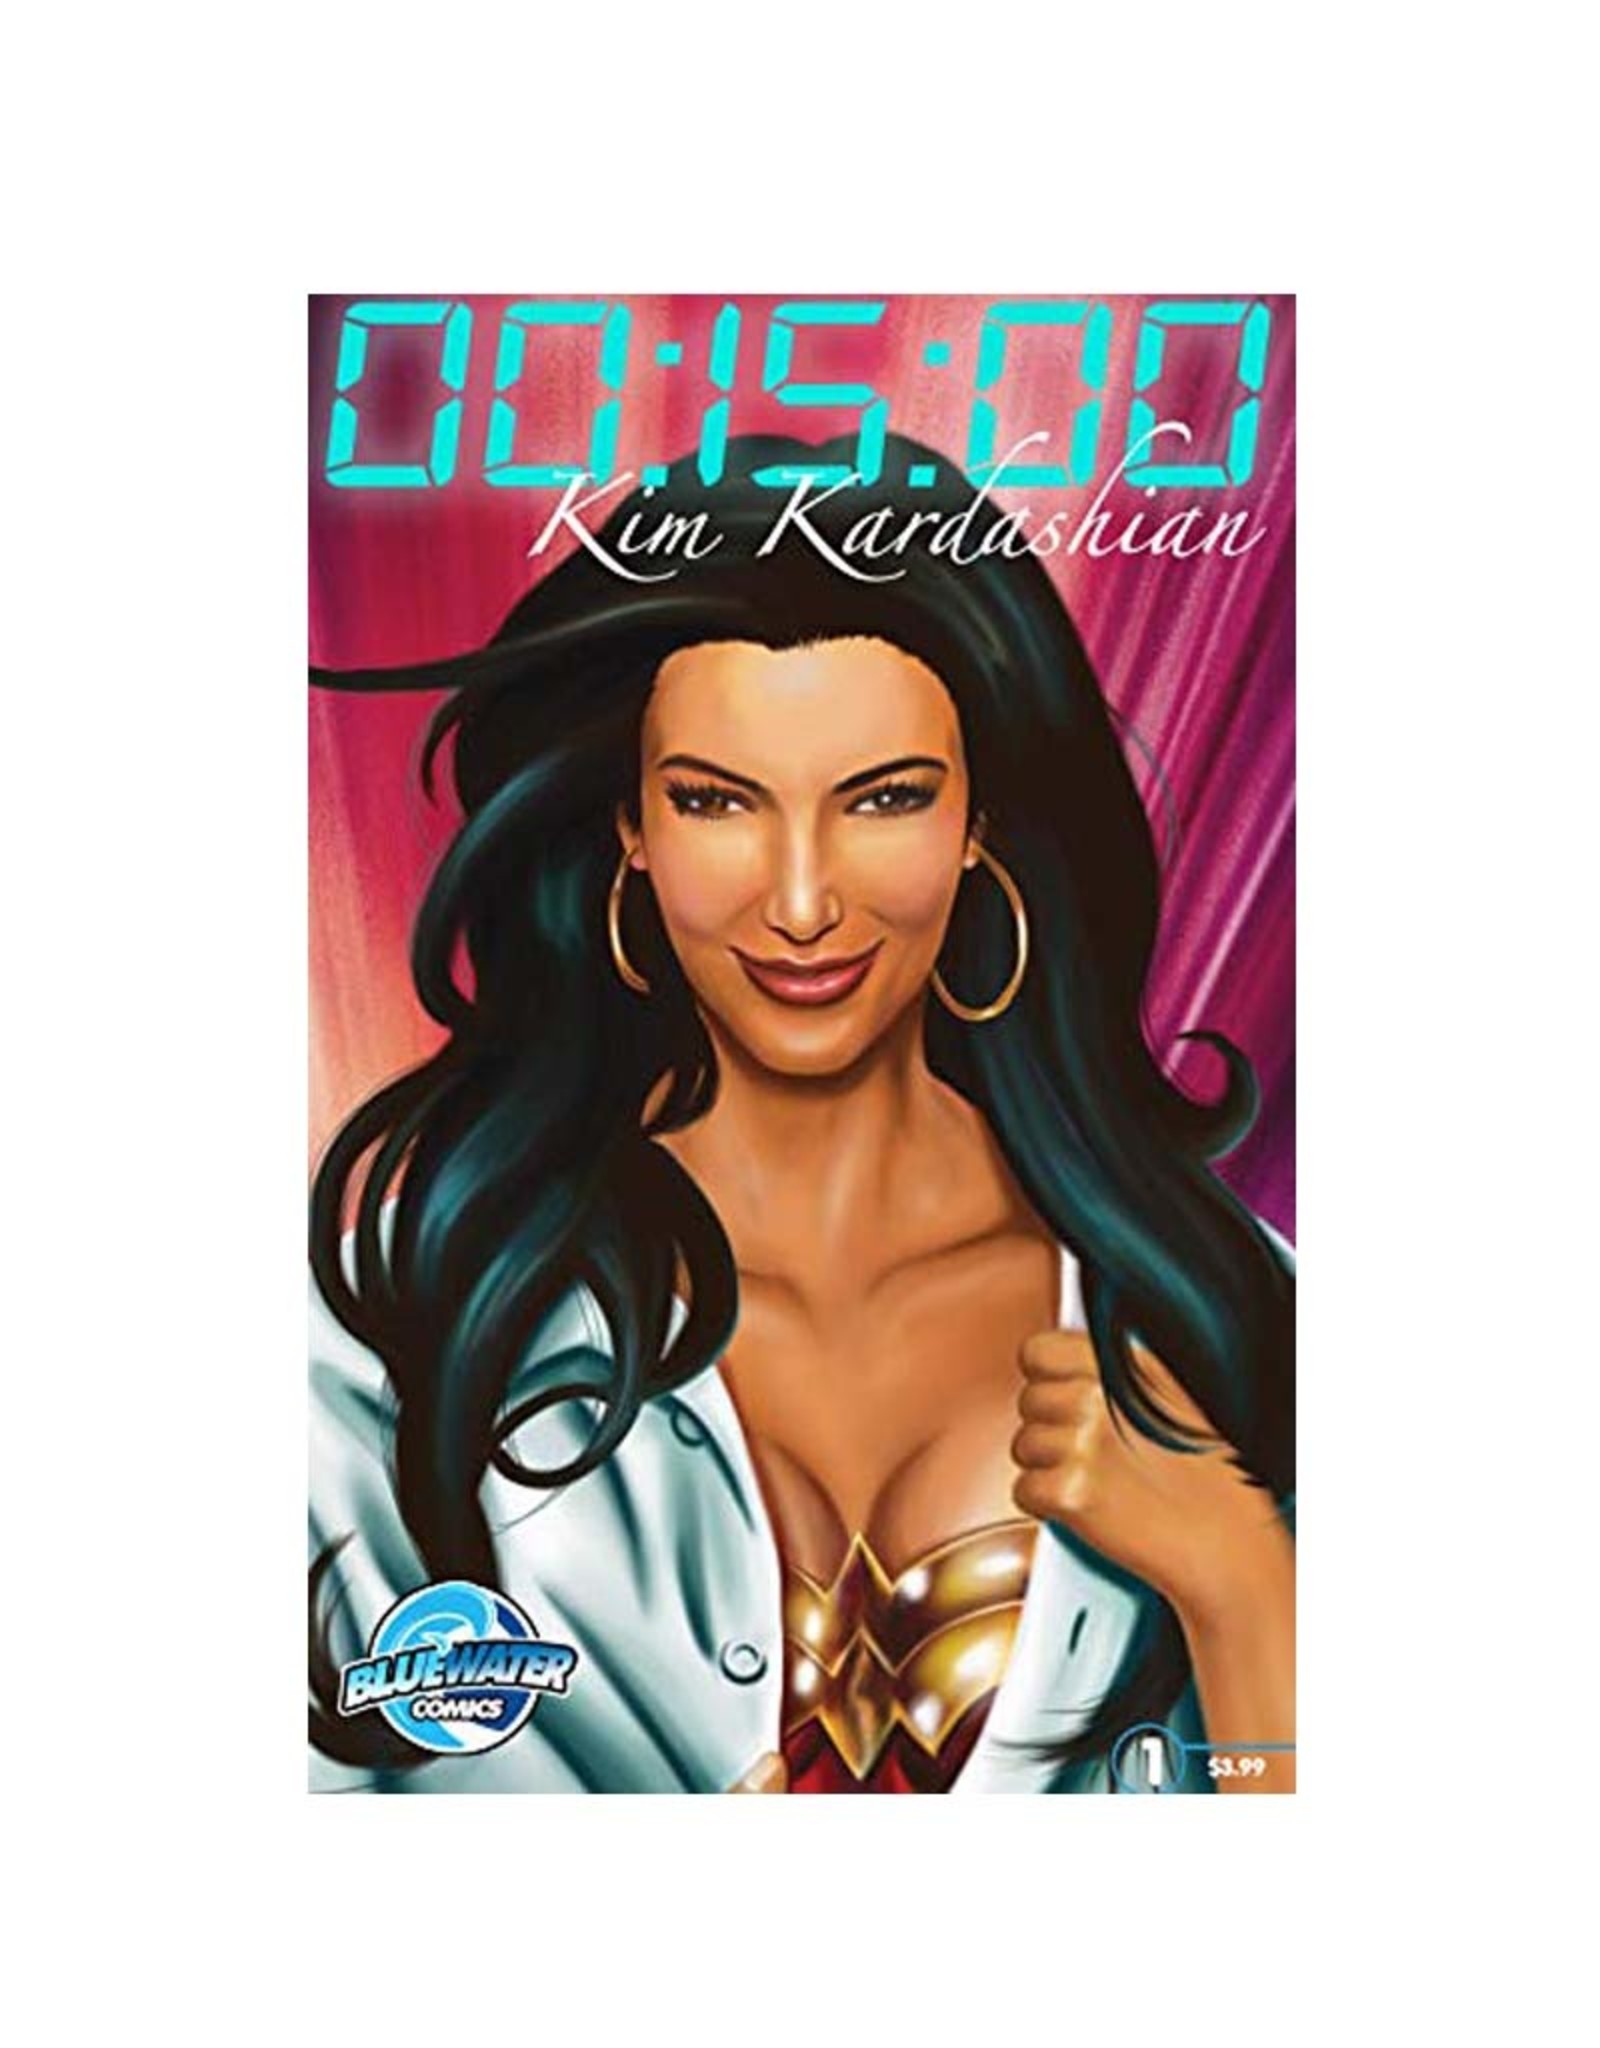 Kim Kardashian Porn Cartoon - 15 Minutes: Kim Kardashian - Zia Comics